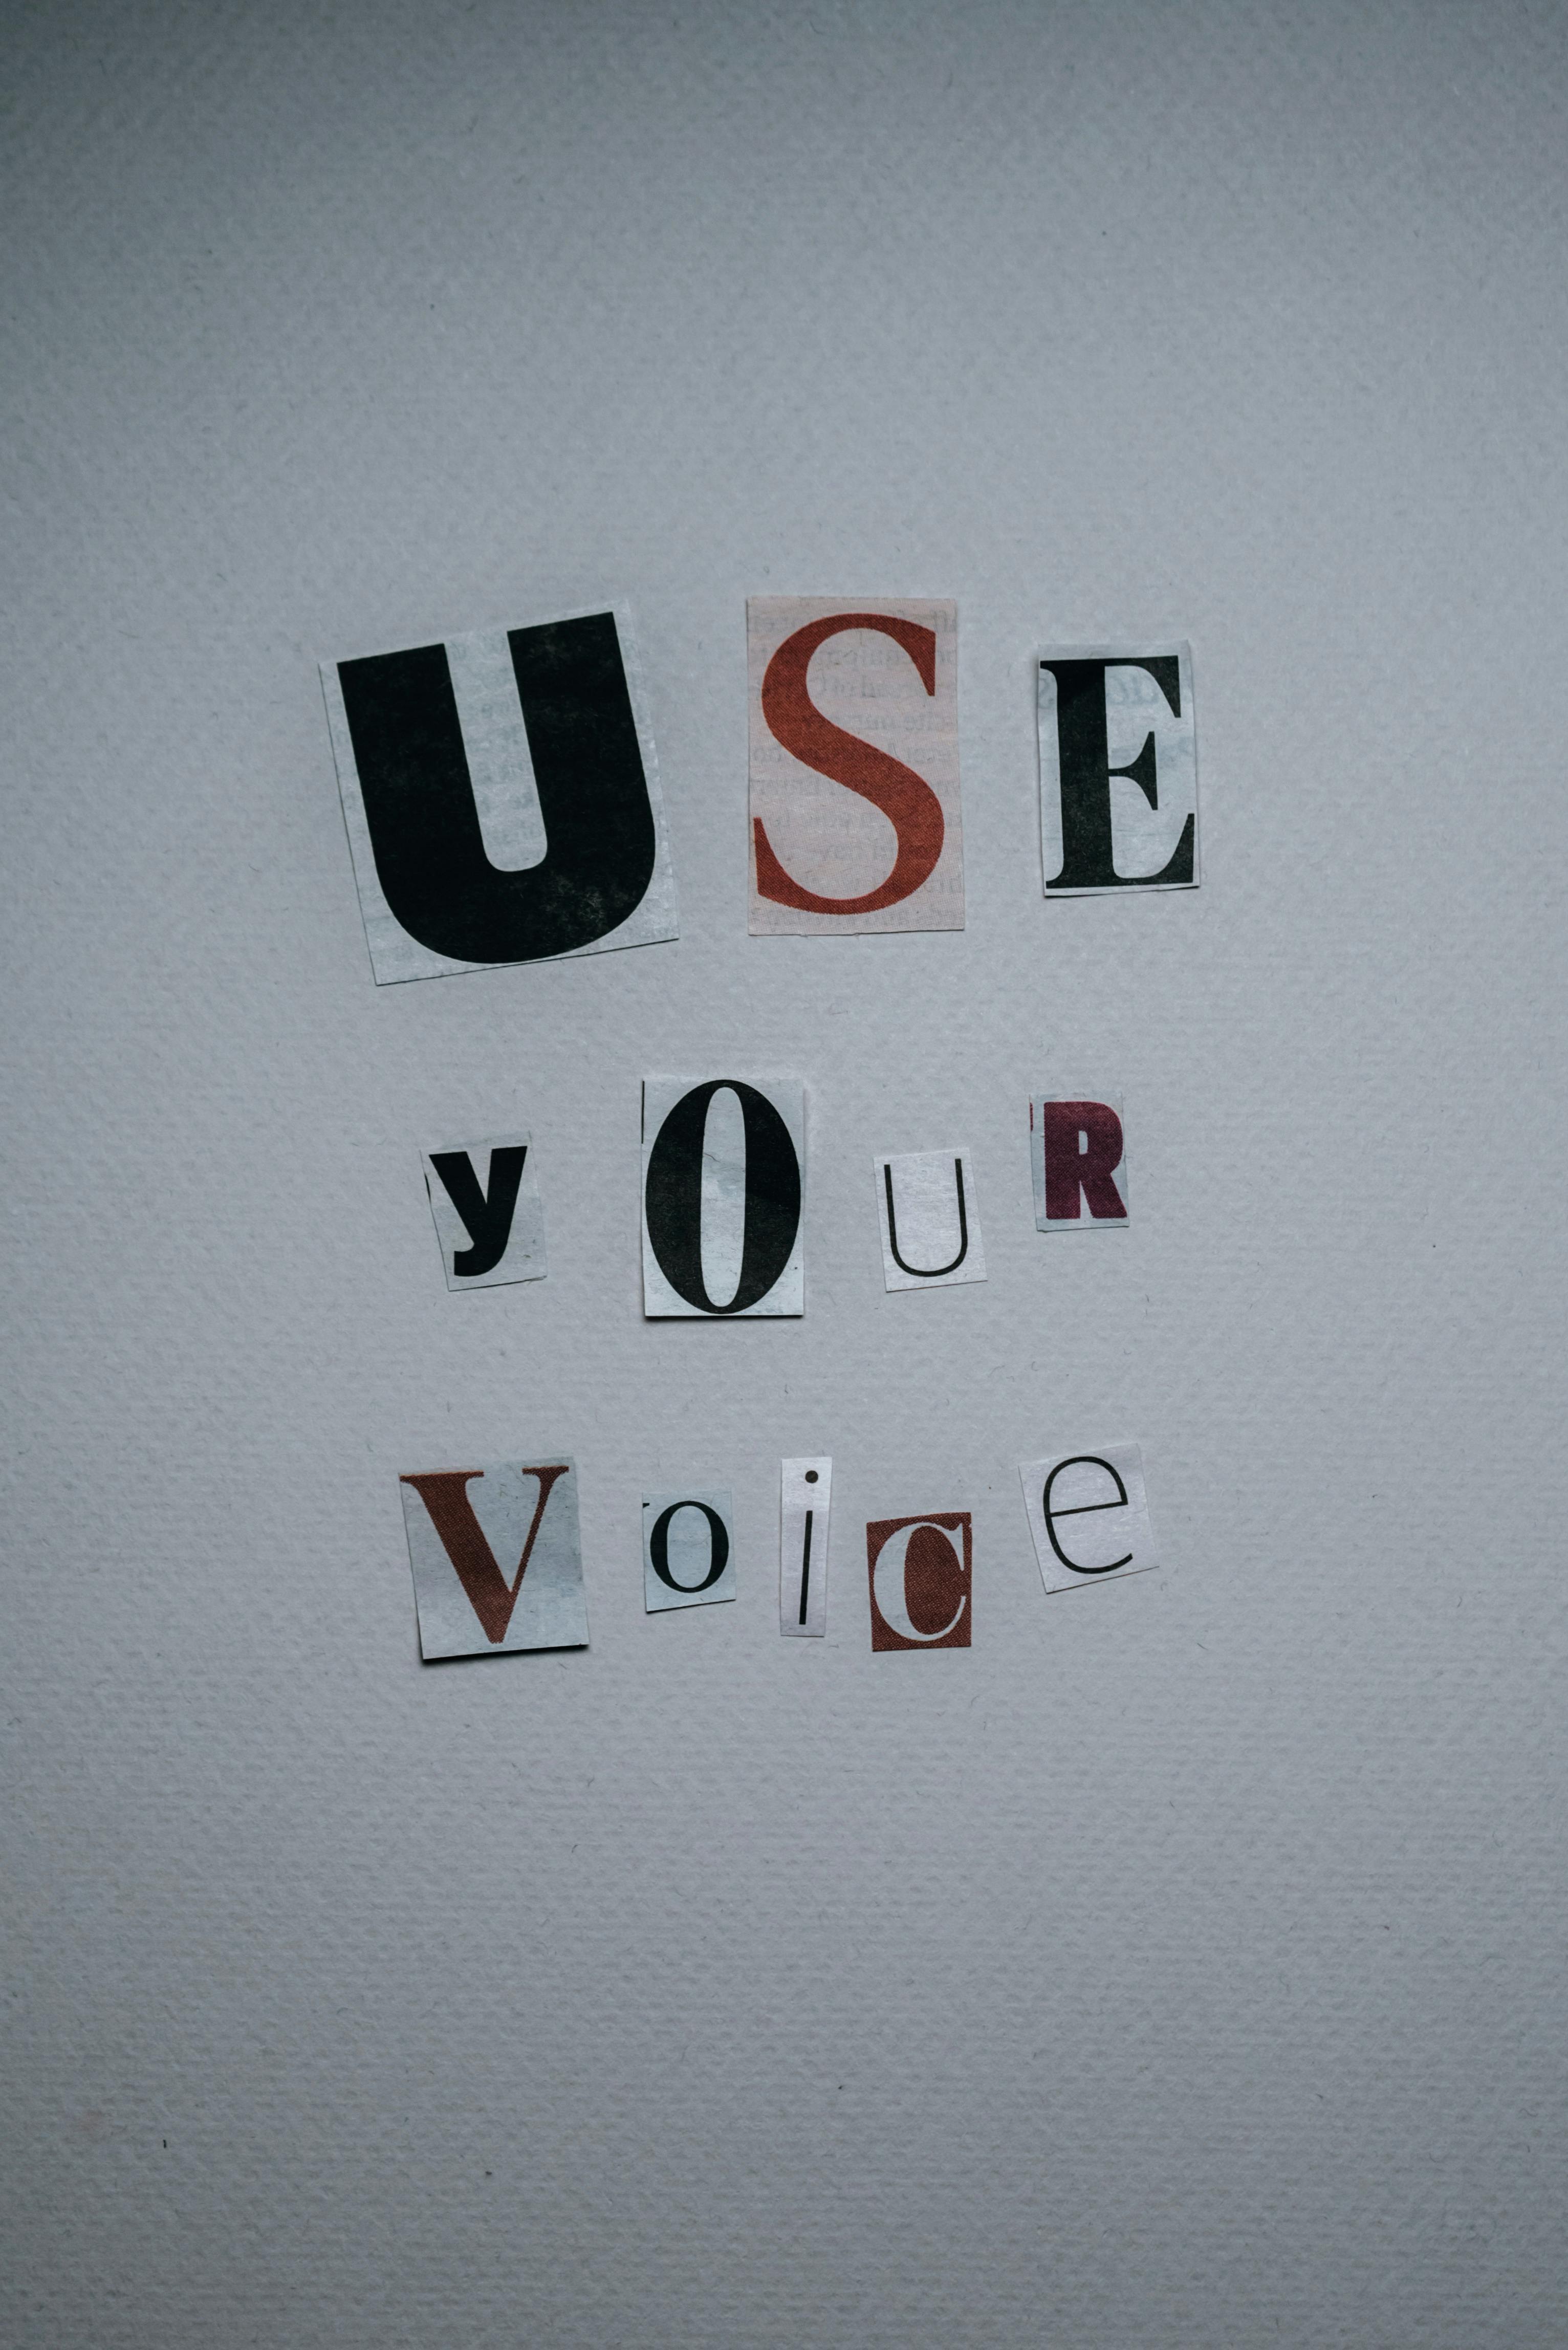 Ich beschloss, meine Stimme zu benutzen, um Rache zu nehmen. Nur zu Illustrationszwecken | Quelle: Pexels